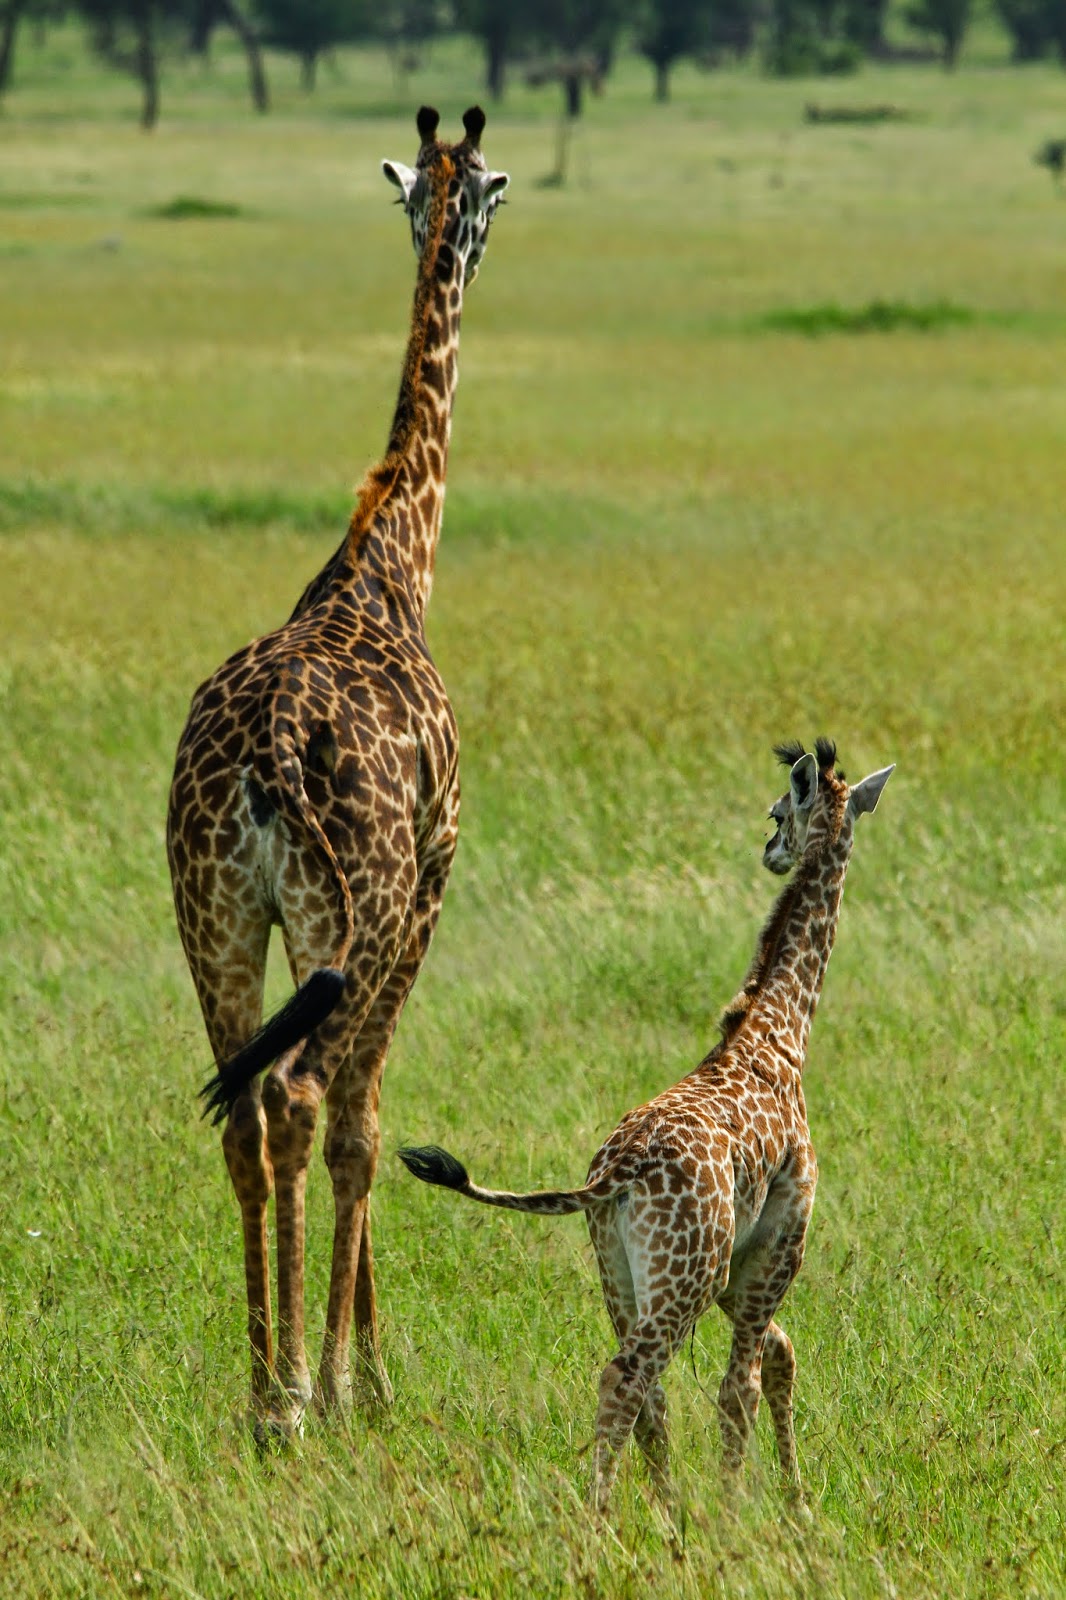 Ver GIRAFAS NO SERENGETI e testemunhar as maravilhas estes animais encantadores | Tanzânia